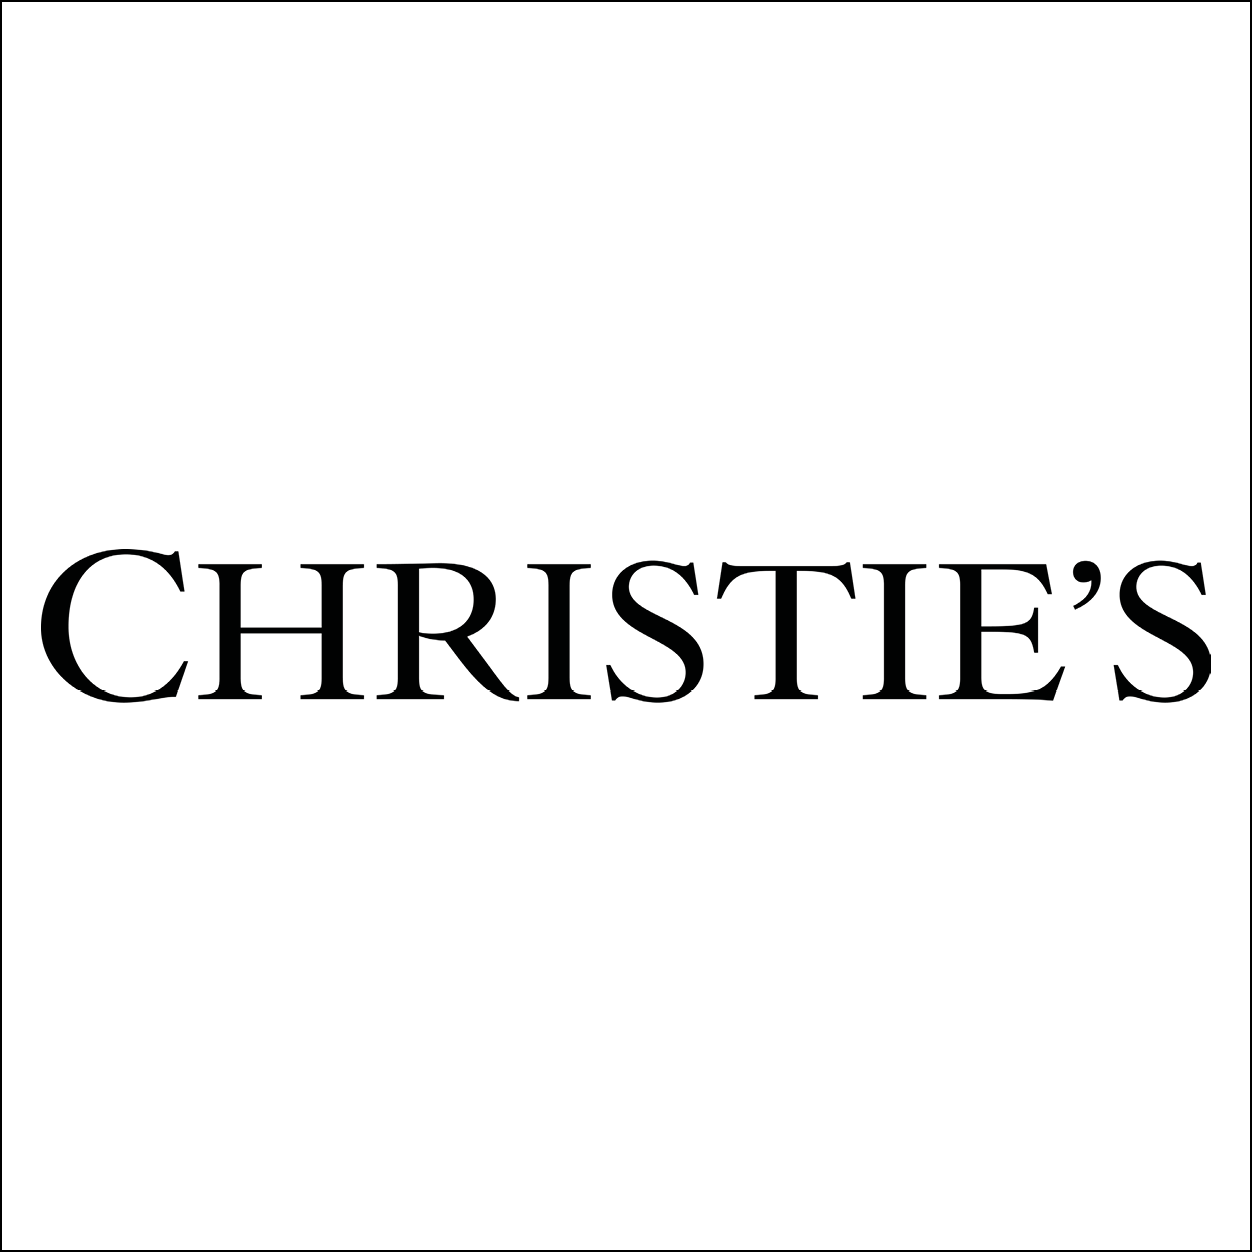 Christie’s